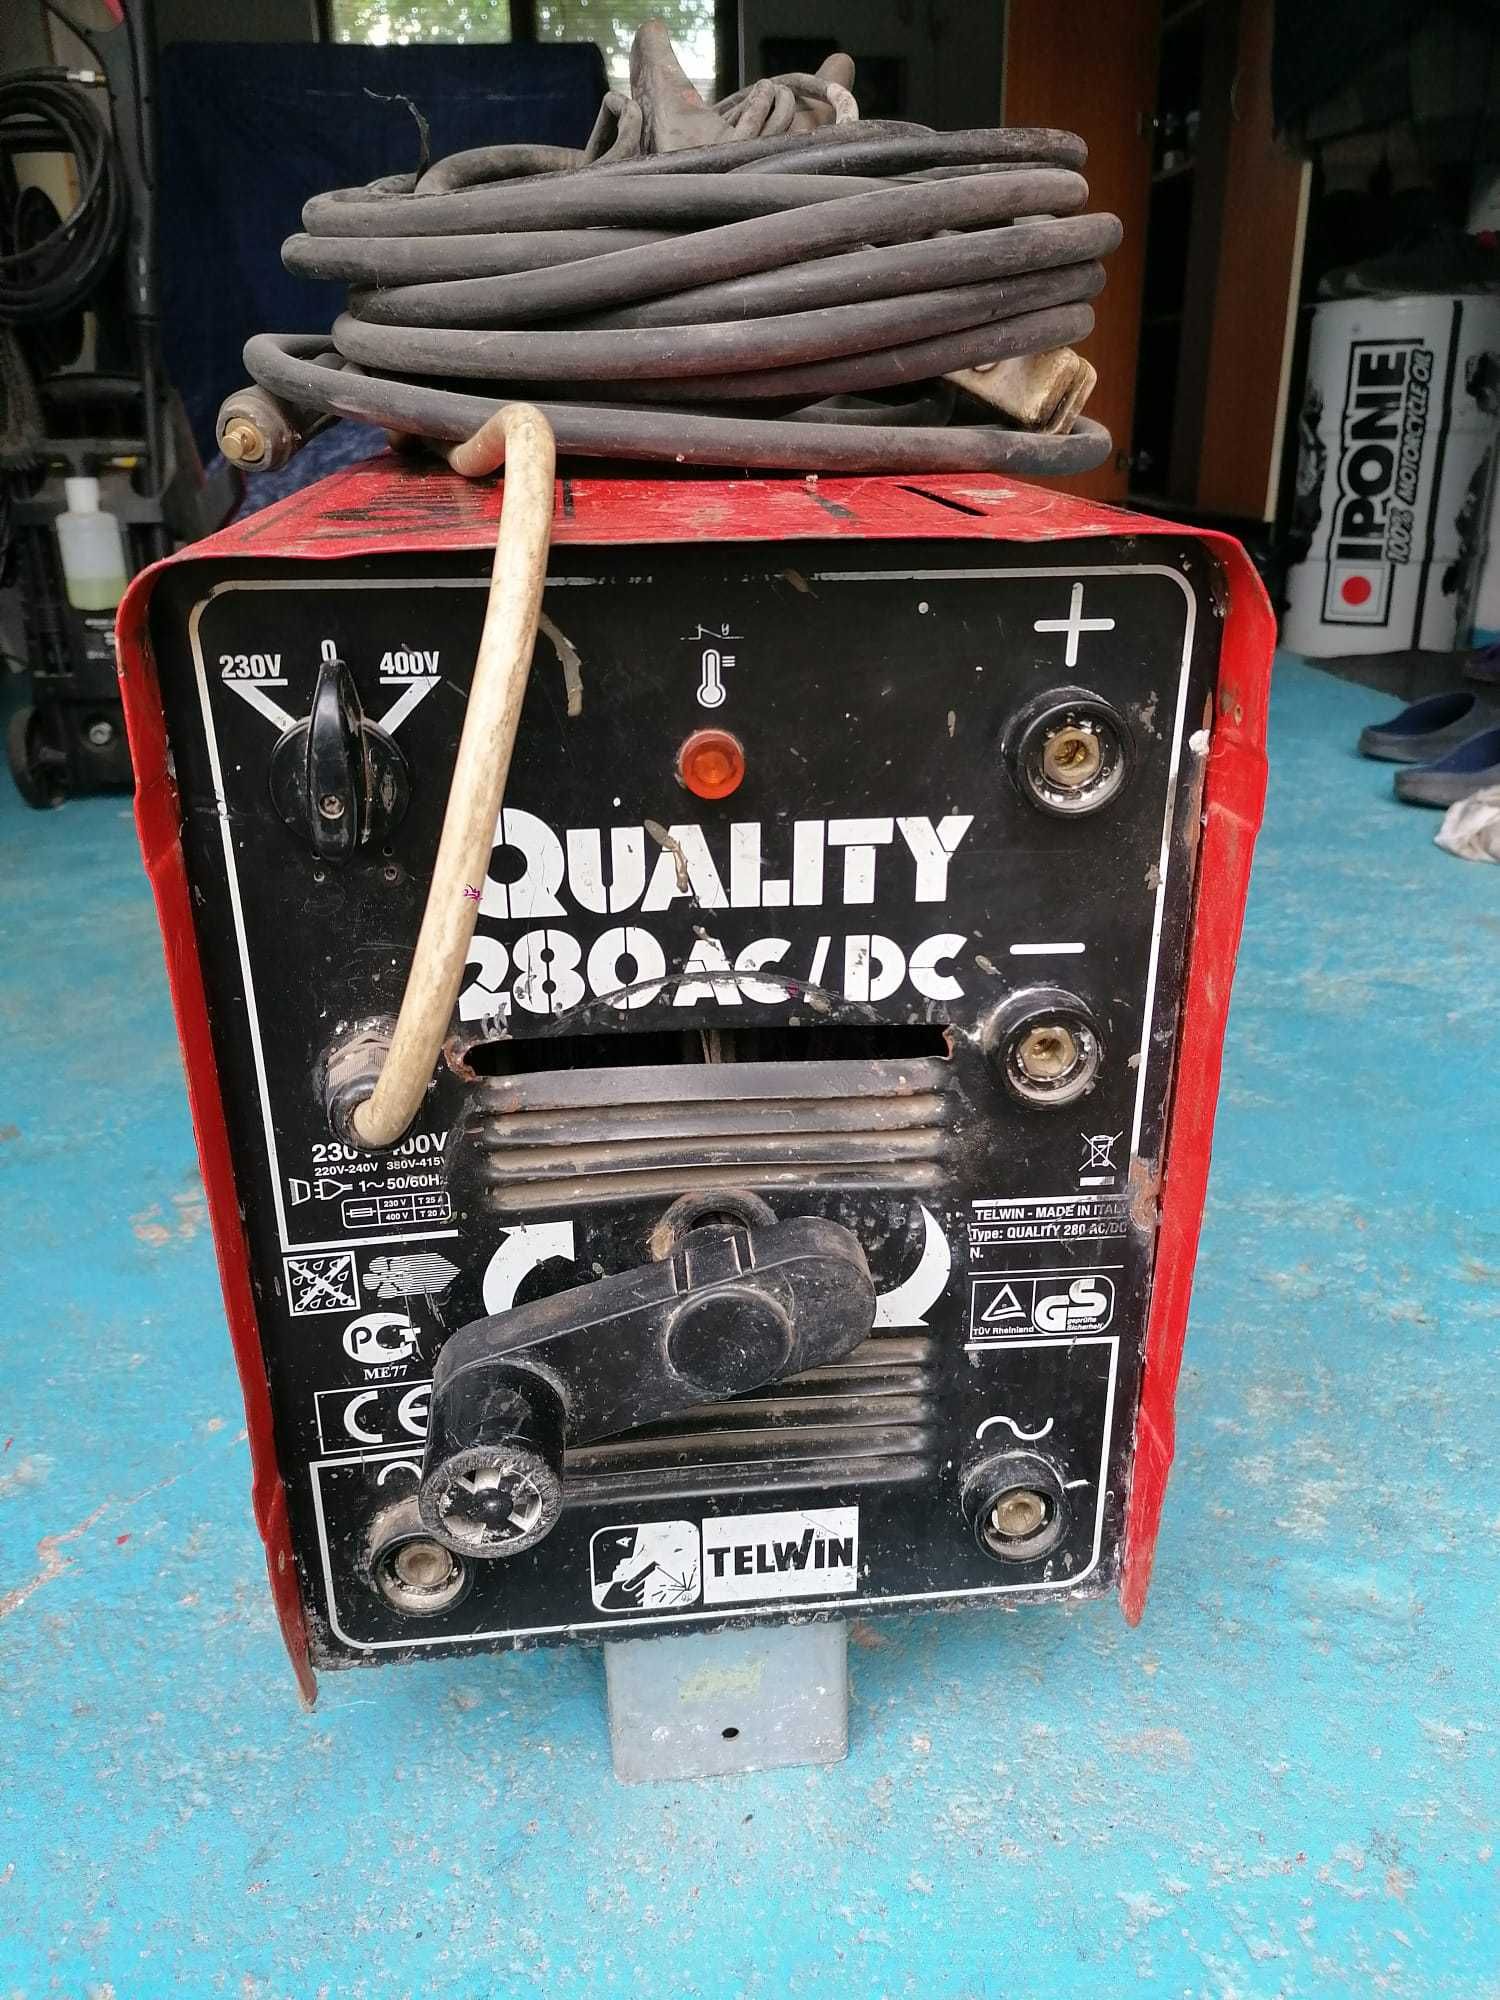 Aparat de sudura TELWIN Quality 280 AC/DC